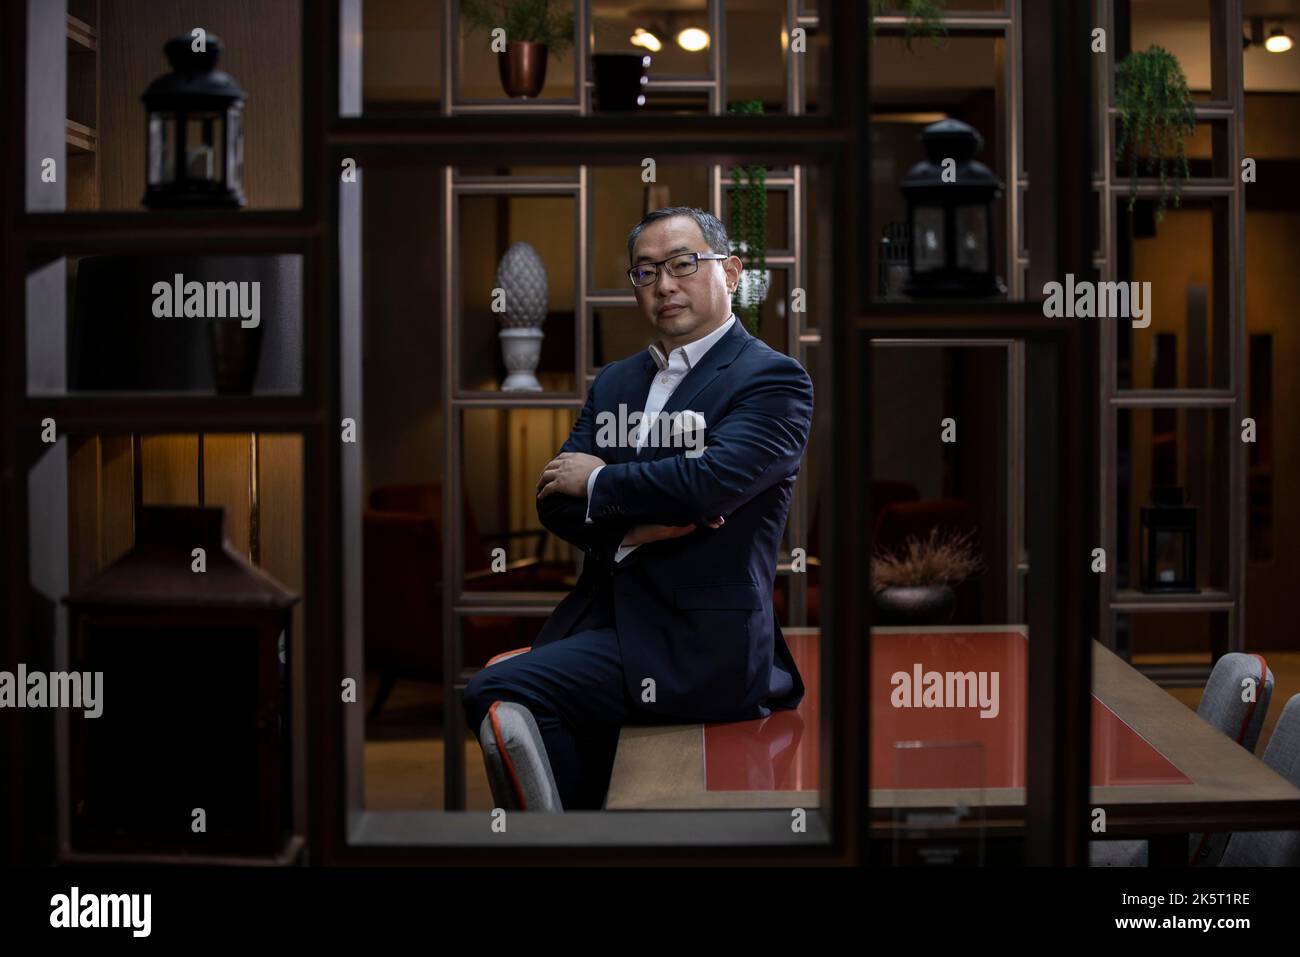 William Je, propietario de fondos de cobertura británico, siendo blanco de ataques del estado chino después de lanzar una organización benéfica democrática en Hong Kong. Foto de stock